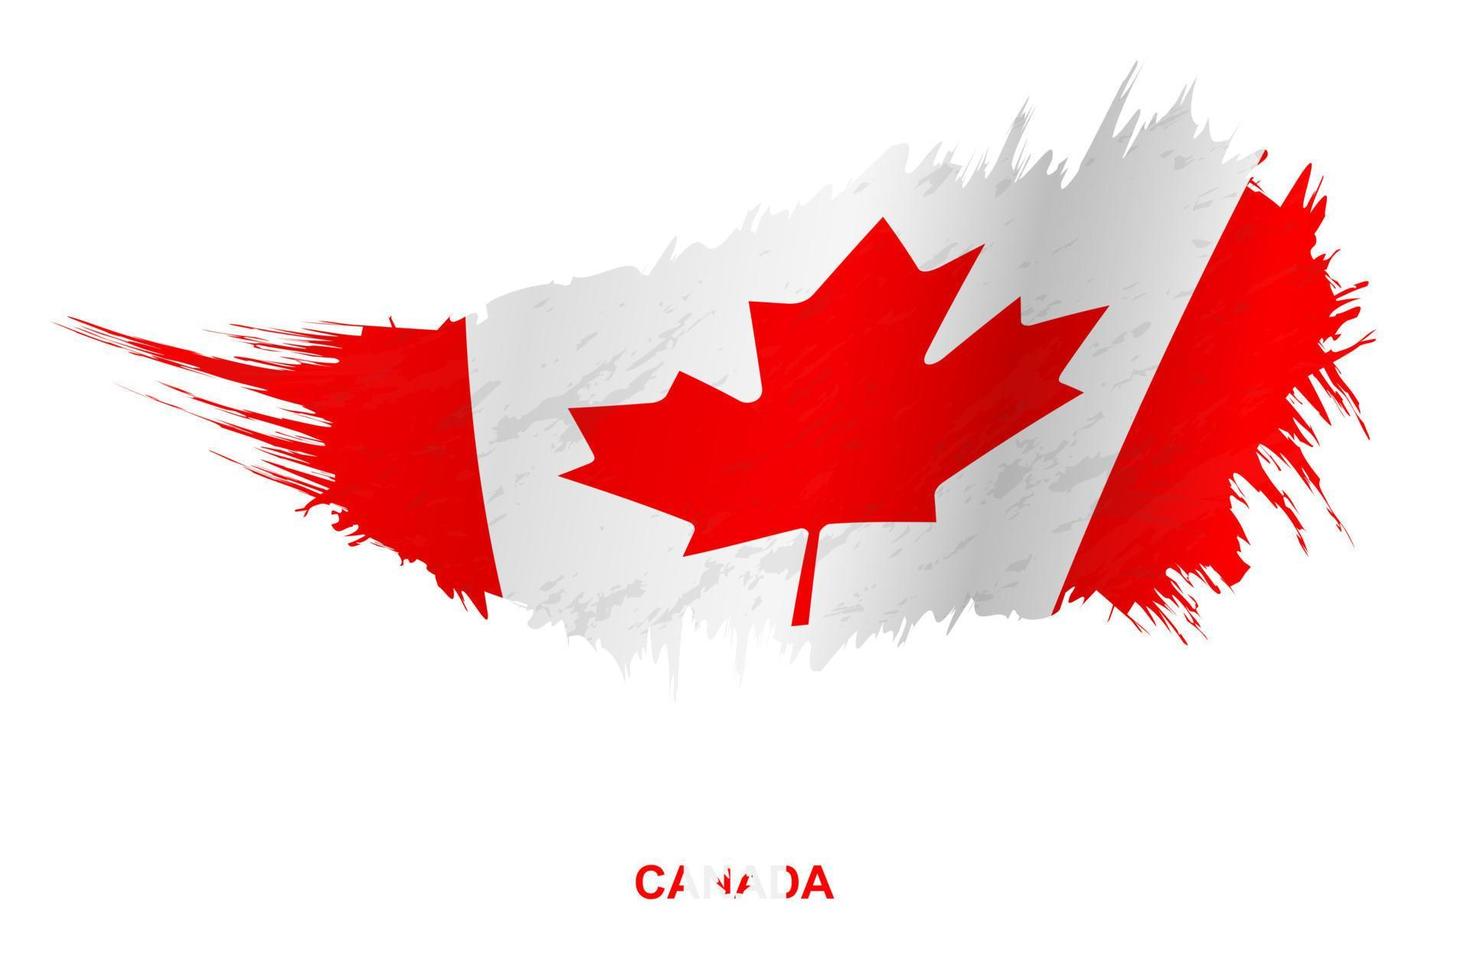 bandeira do canadá em estilo grunge com efeito acenando. vetor